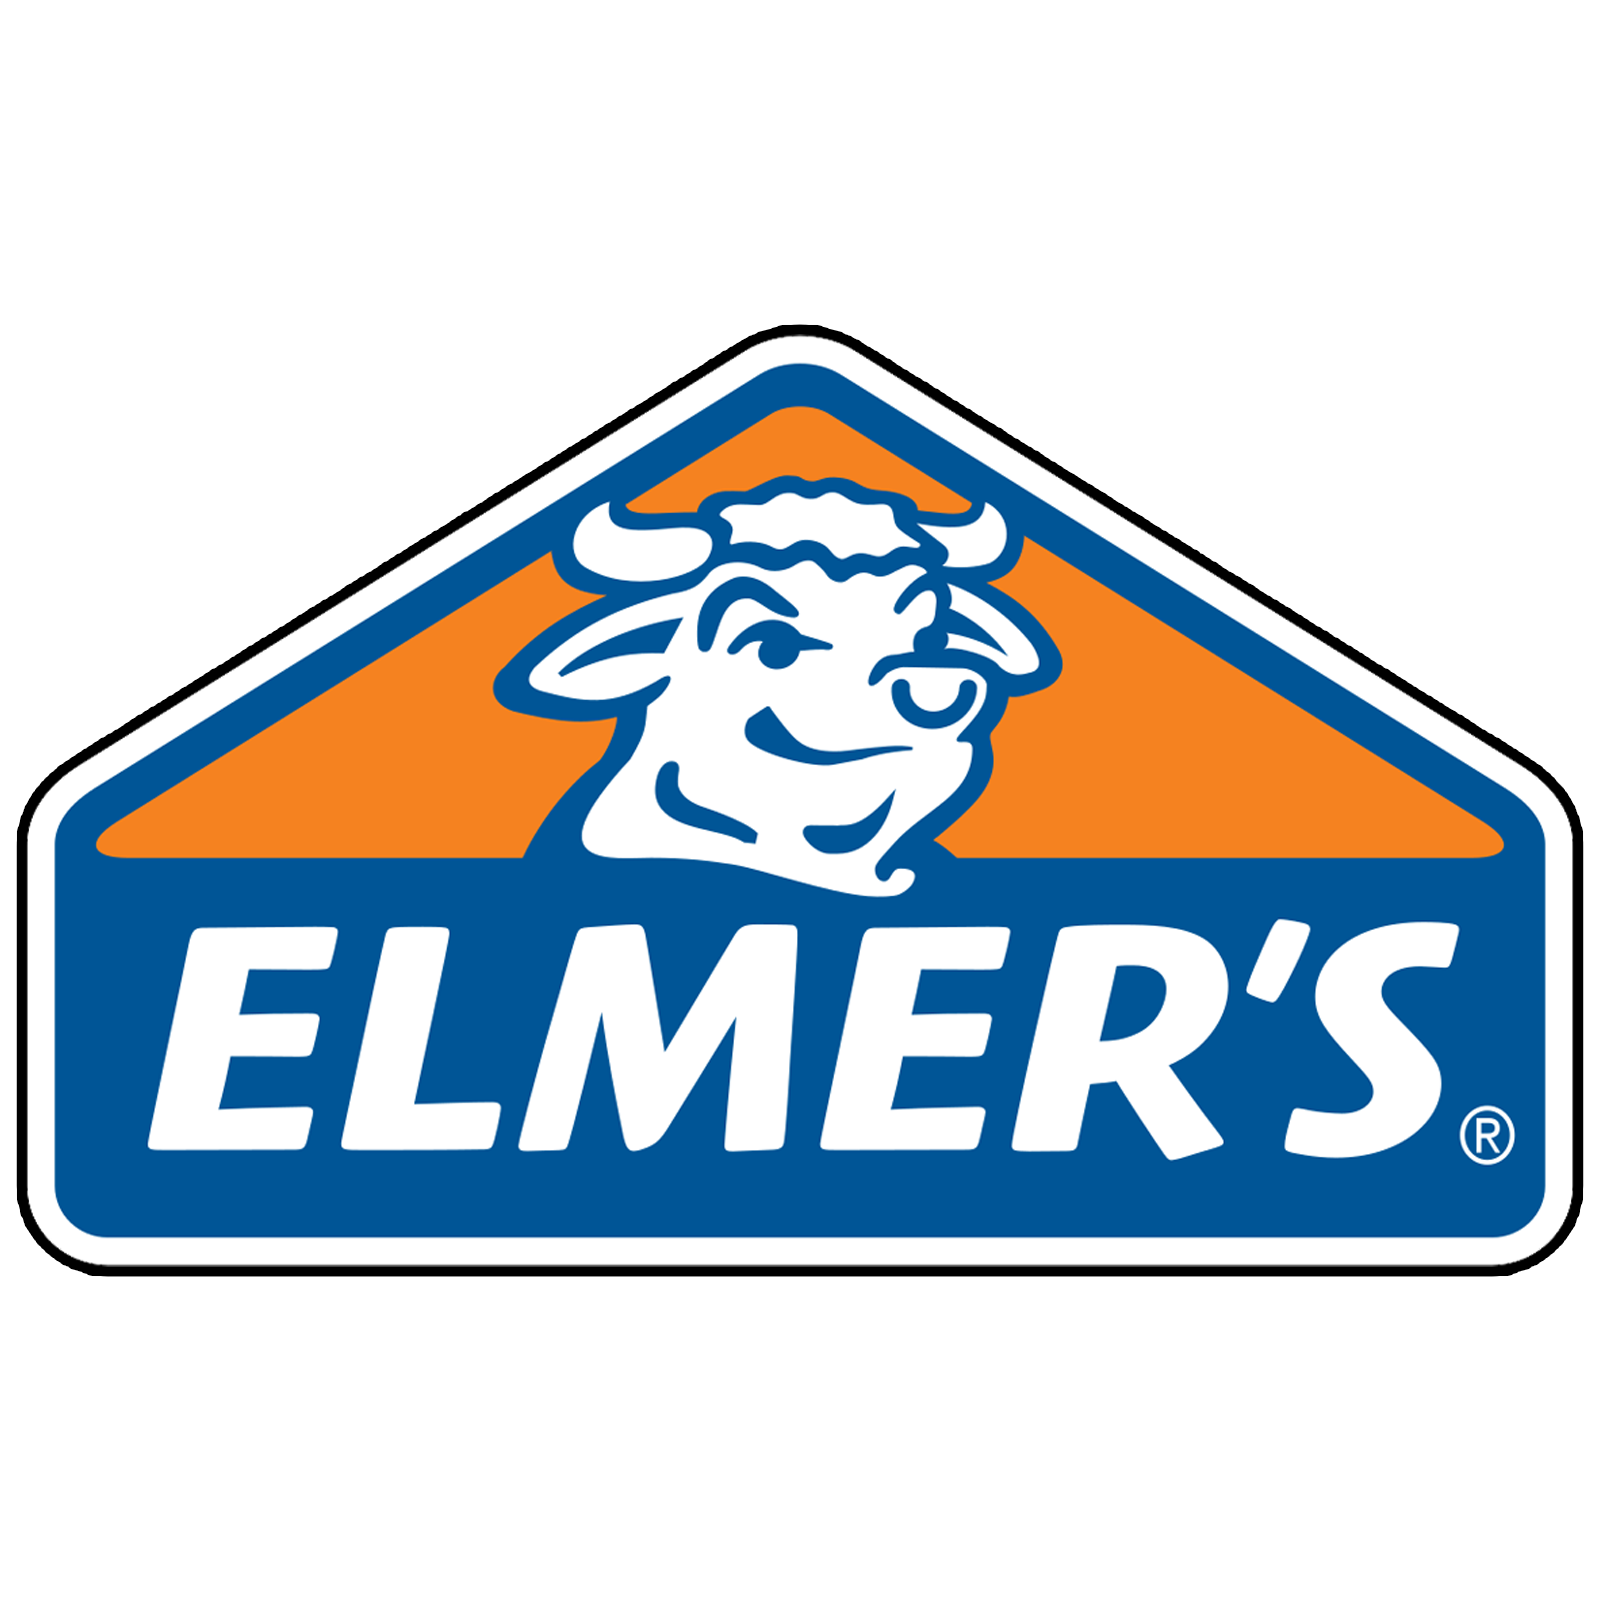 Elmer's Liquid PVA Glue, Washable, White, 118ml– Great for Making Slime